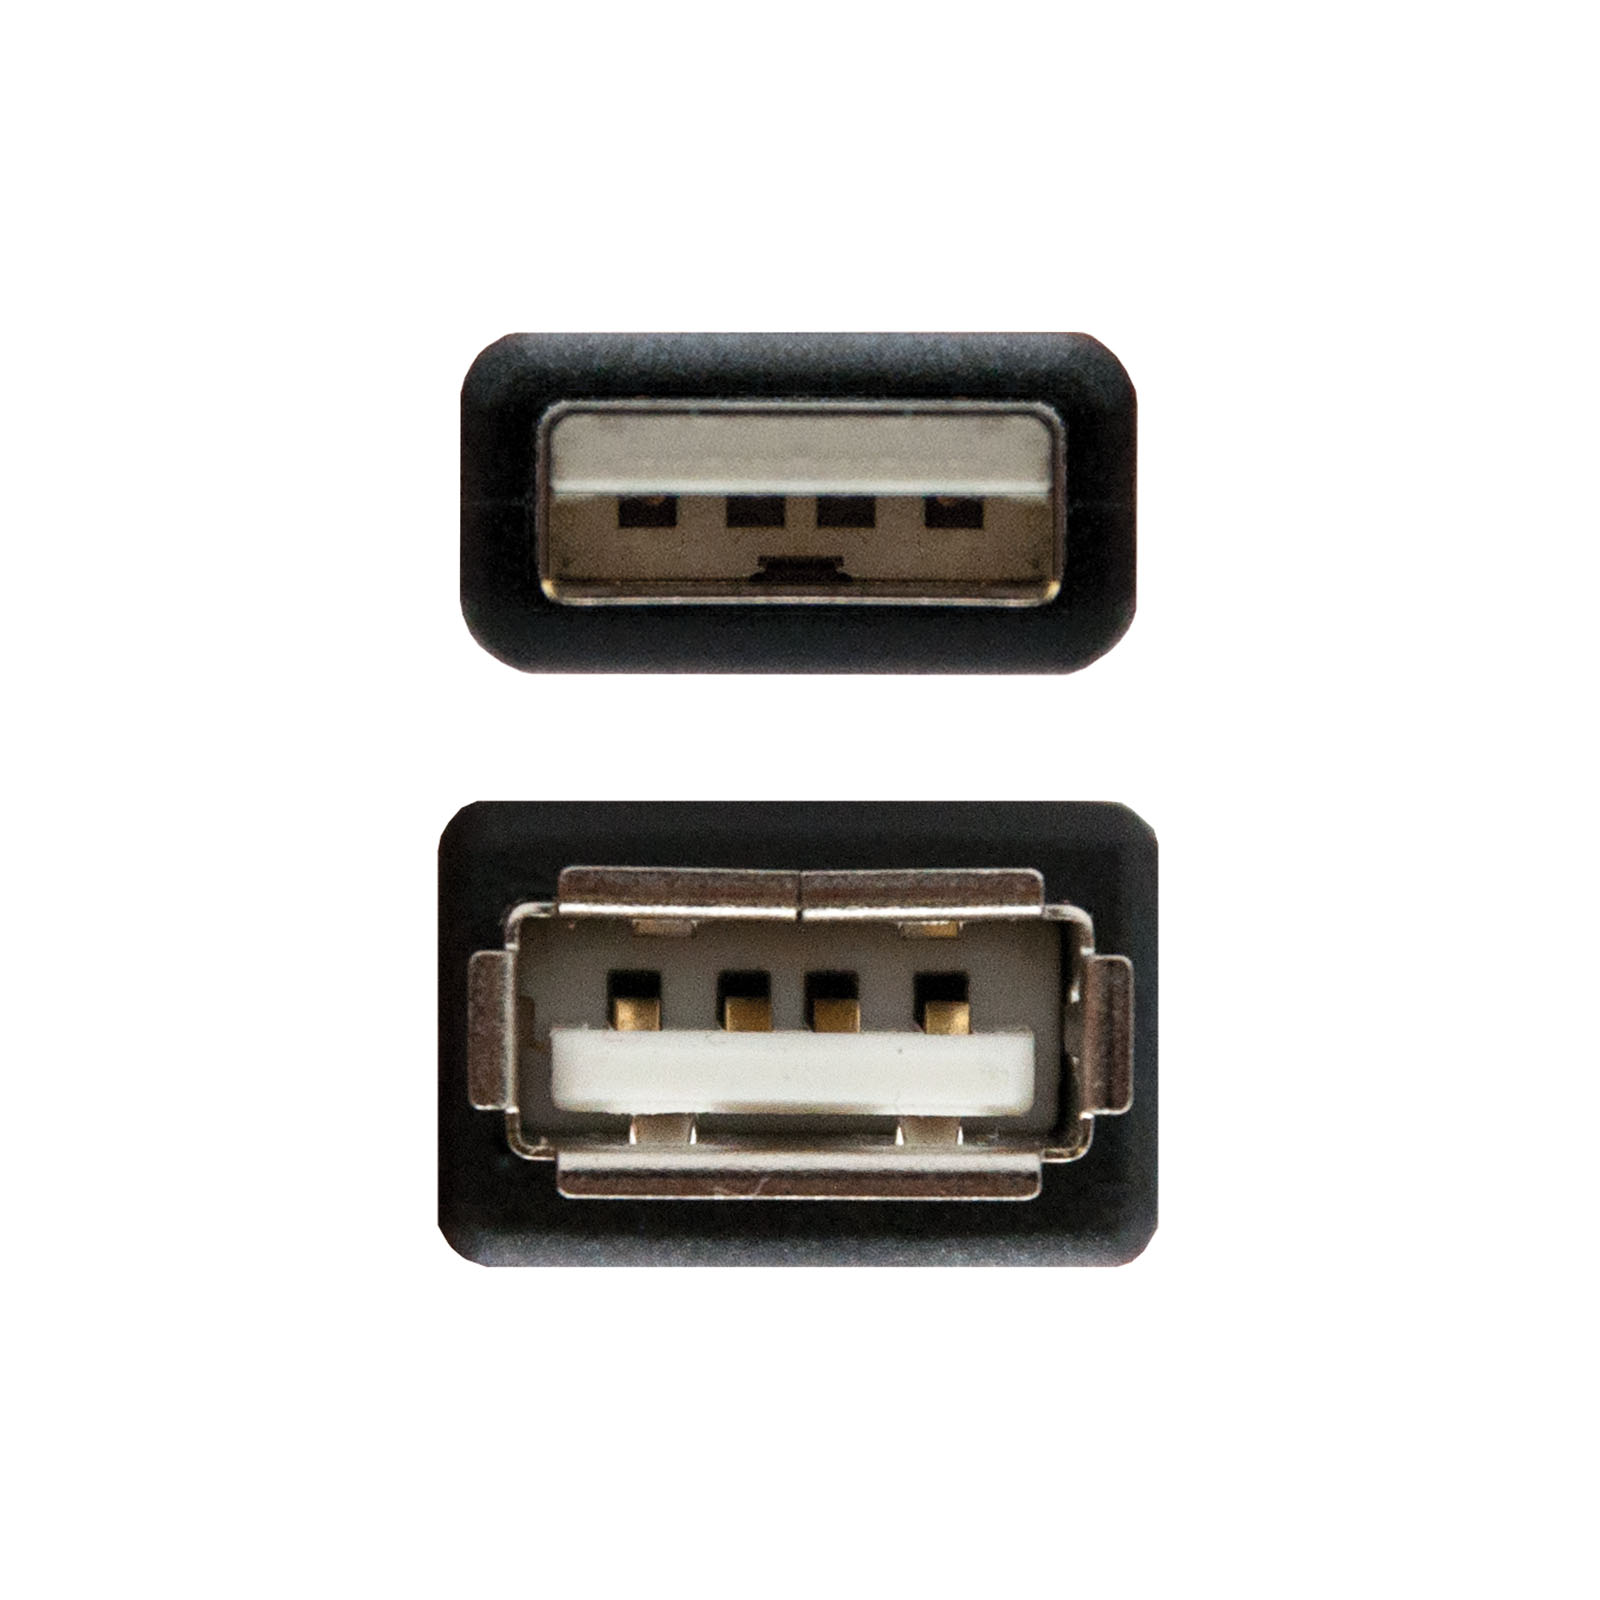 Câble d'extension Nanocable USB-A 2.0 Mâle vers USB-A Femelle 1m